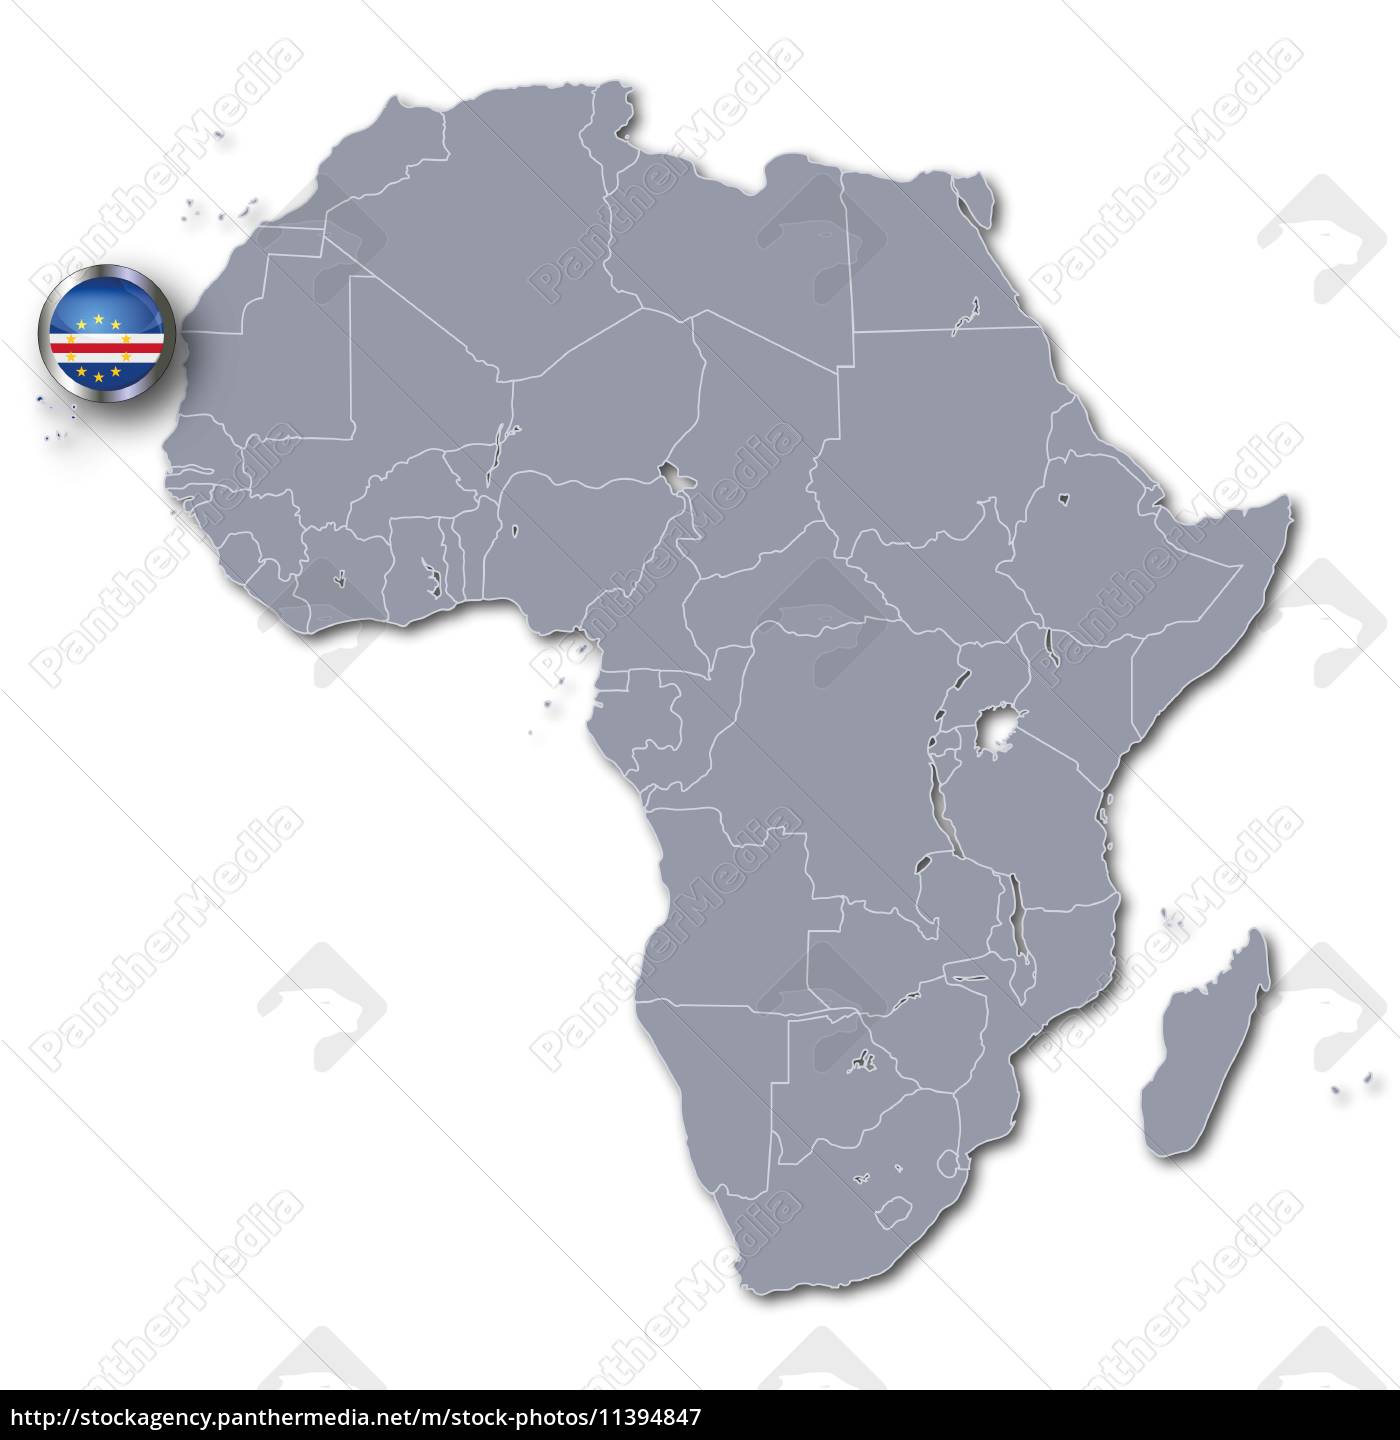 Resignation konstant Alperne afrika kort med kap verde - Royalty Free Image #11394847 | PantherMedia  Billedbureau